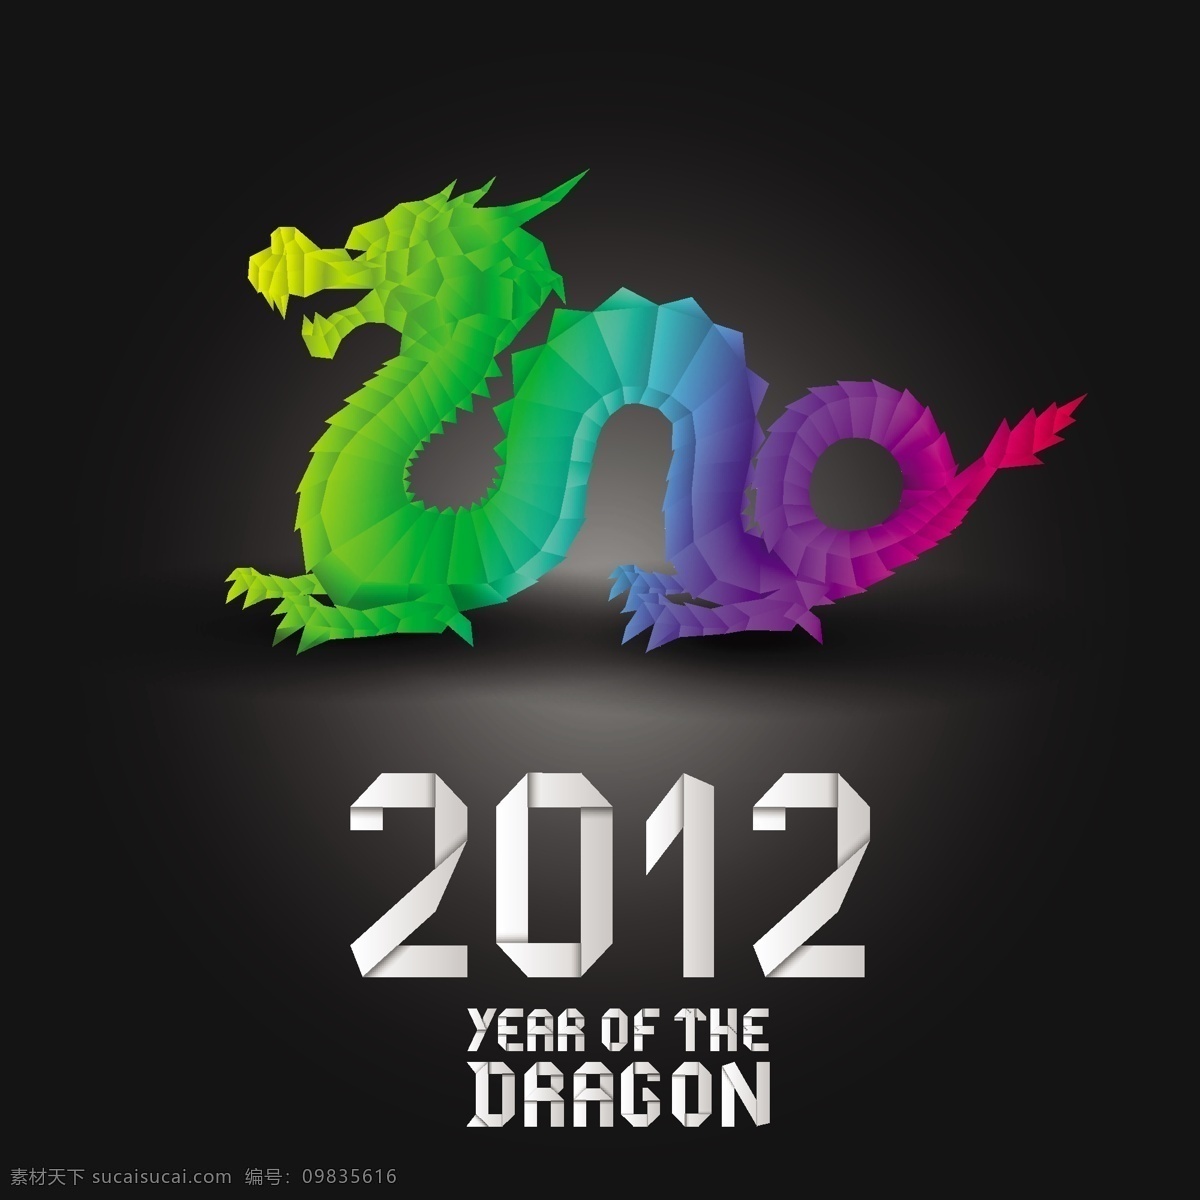 2012 龙年 矢量 新年快乐 龙设计 矢量图 其他矢量图